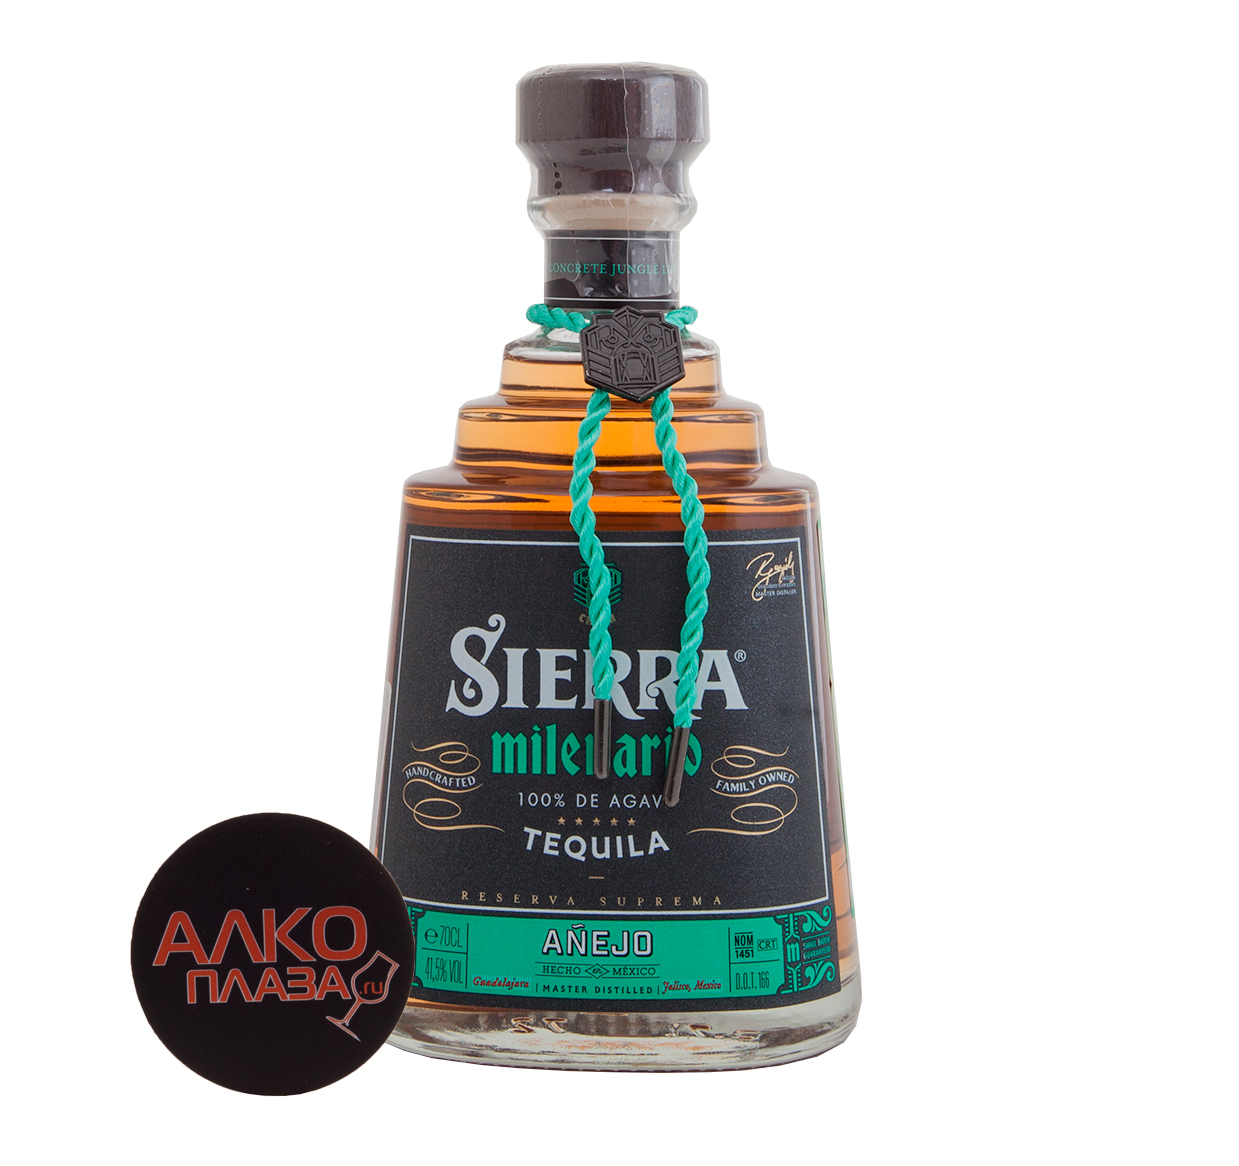 Tequila Sierra milenario Anejo - текила Сиерра Миленарио Аньехо 100% агава 0.7 л